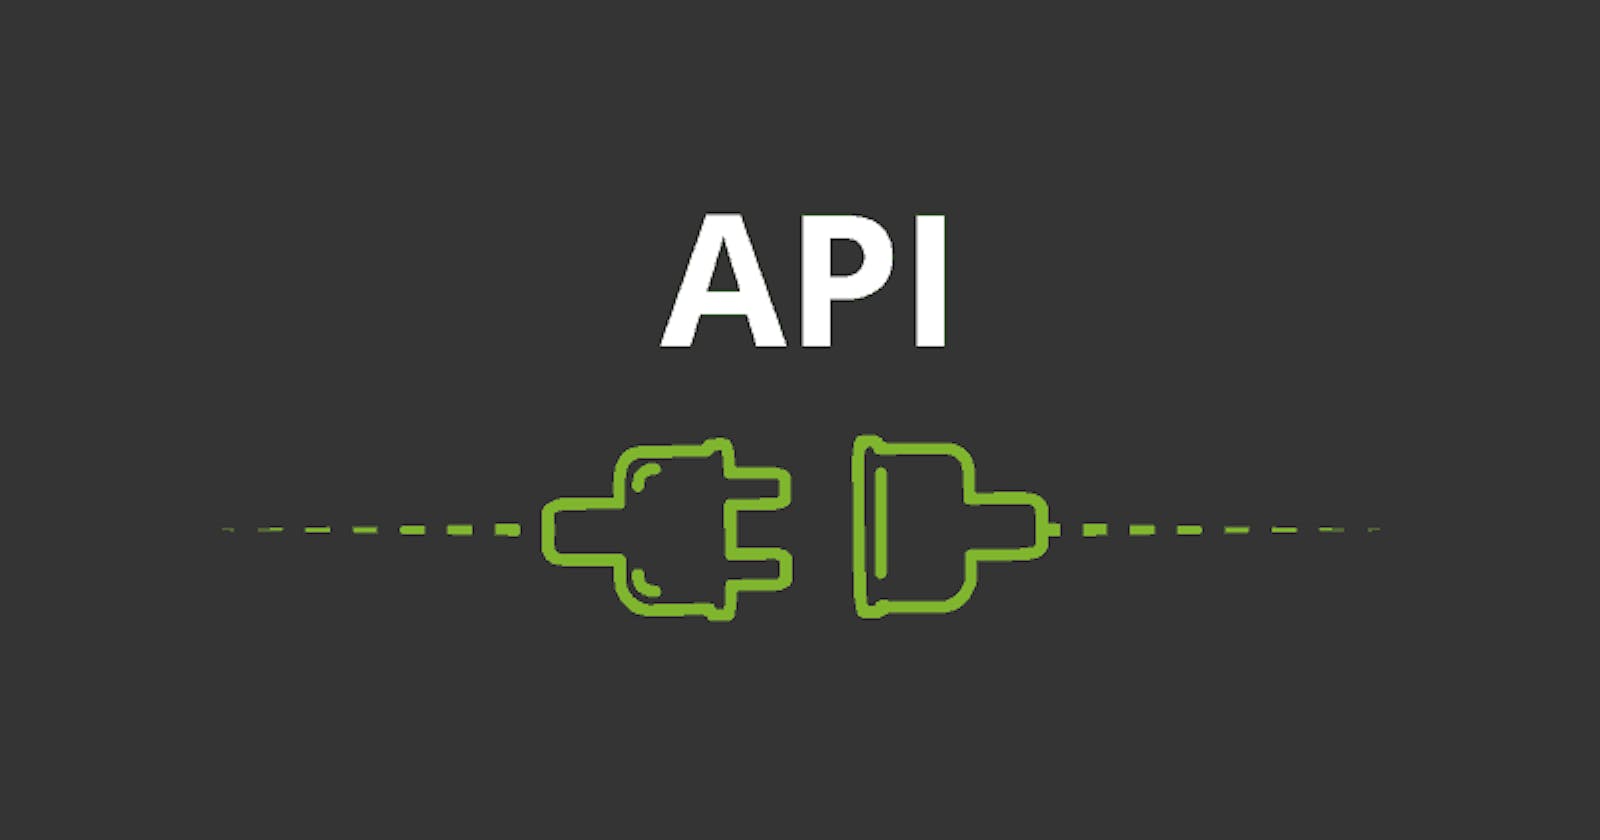 Understanding API in the simplest way.